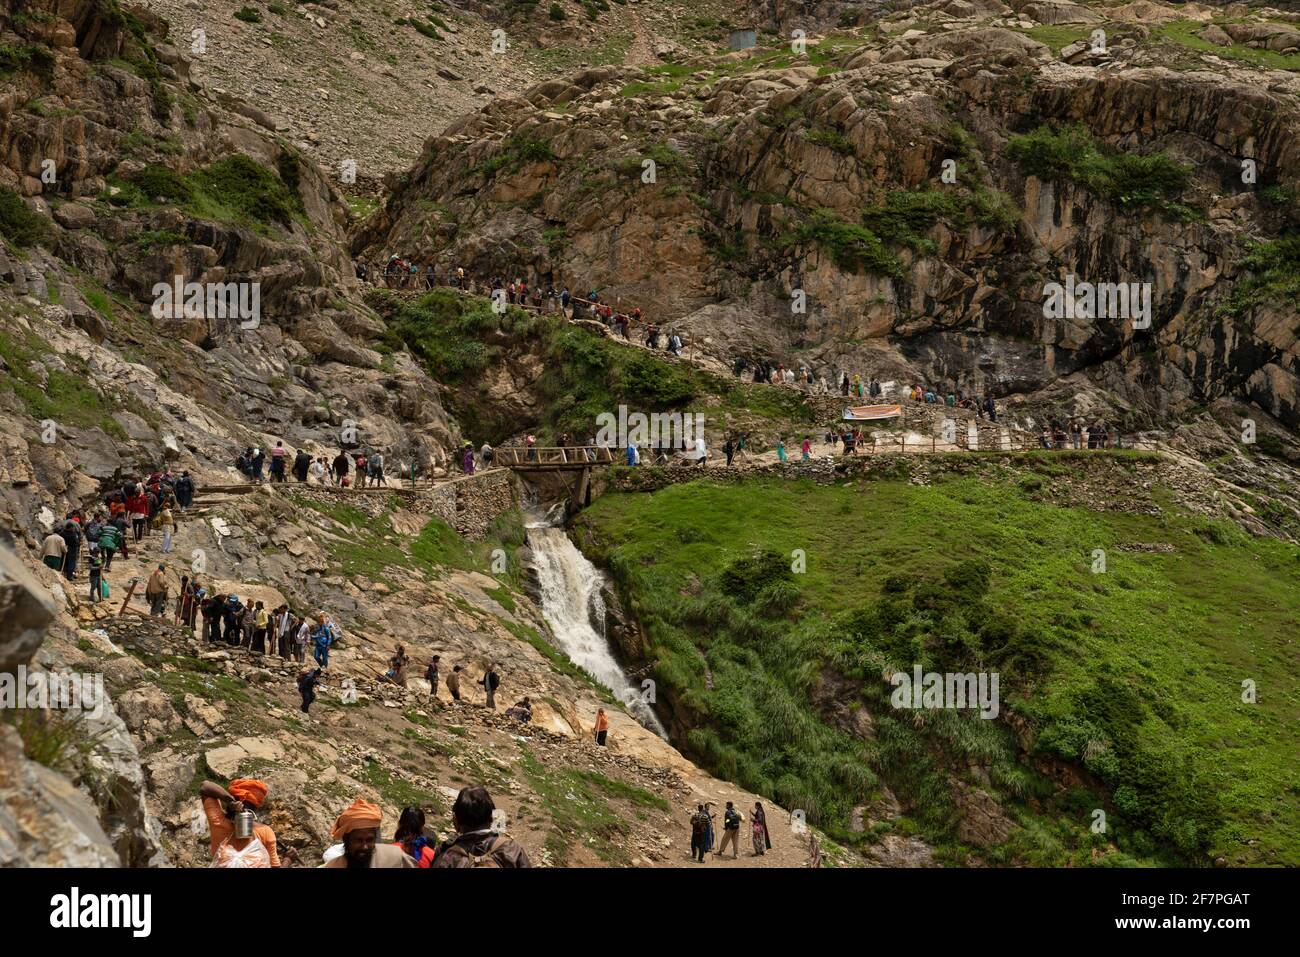 Tourist walking towards basecamp at Tisu Top, Jammu and Kashmir, India Stock Photo